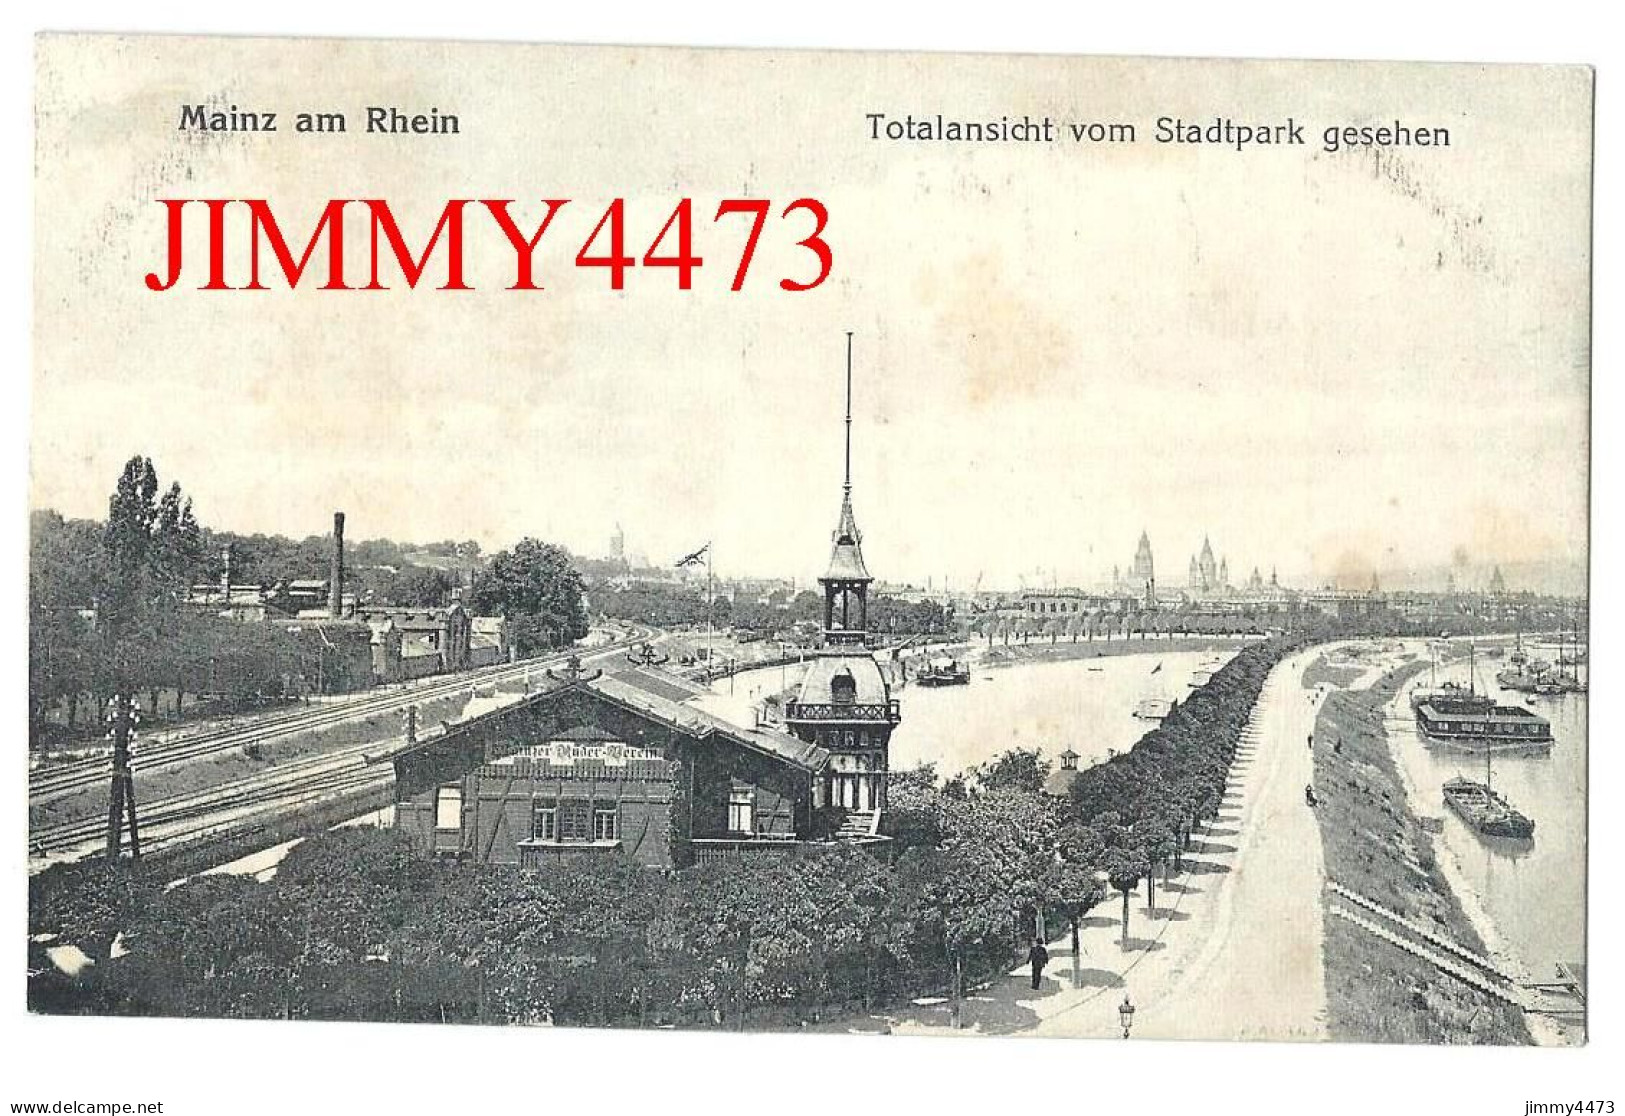 MAINZ Am RHEIN En 1919 - Totalansicht Vom Stadtpark Gesehen ( Rhénanie Palatinat ) 1905 Ludwig Feist Mainz - Mainz